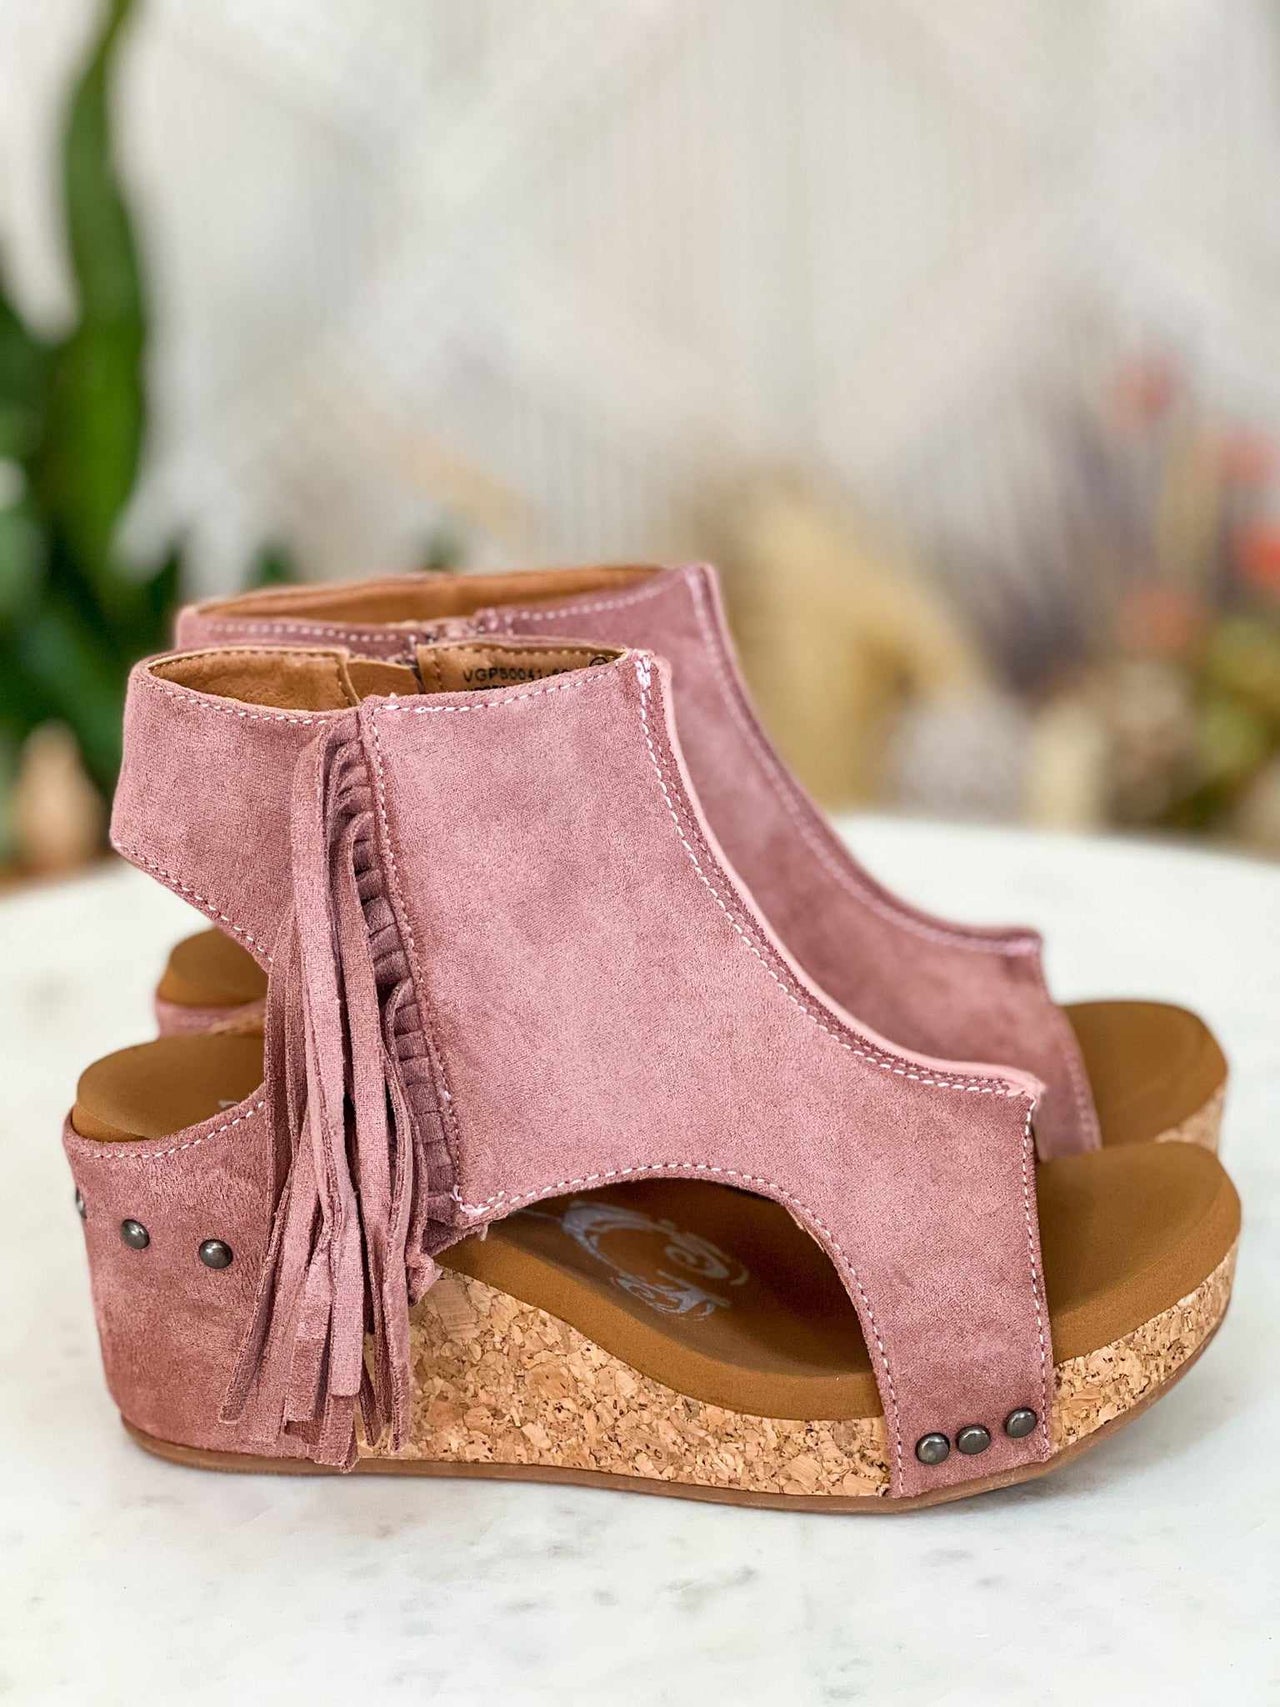 Blush pink suede platform wedge sandals